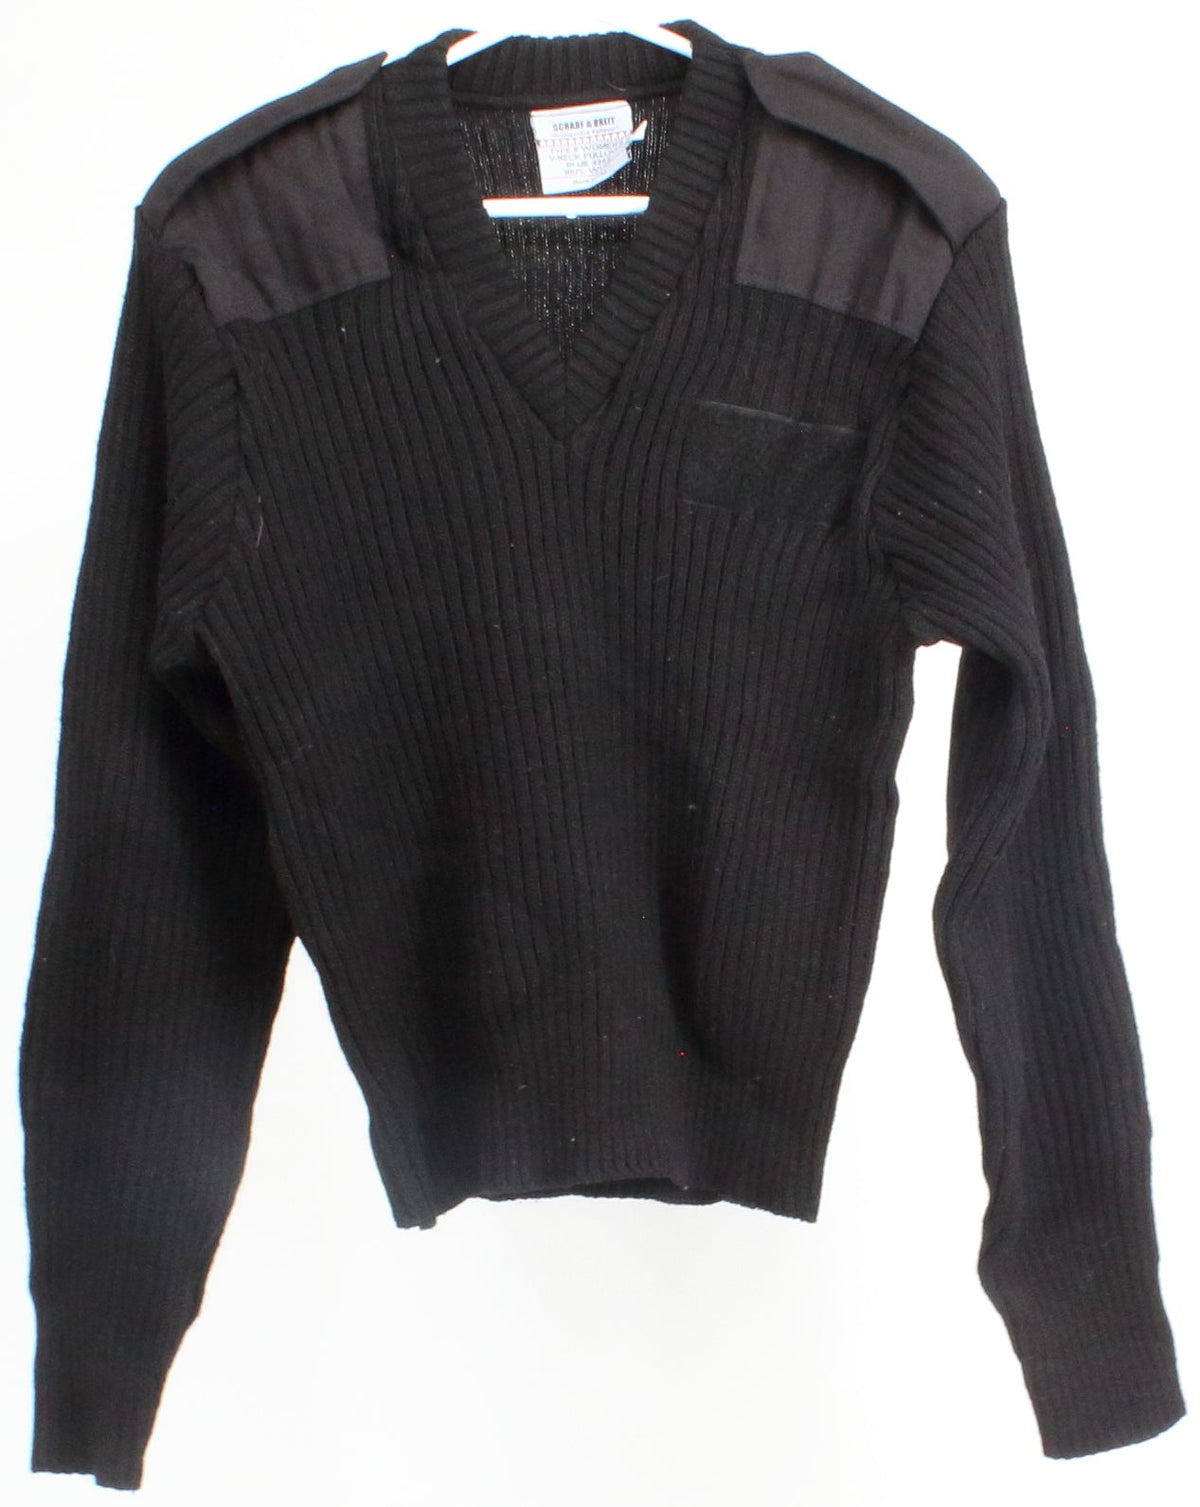 Scharf & Breit V-Neck Pullover Sweater